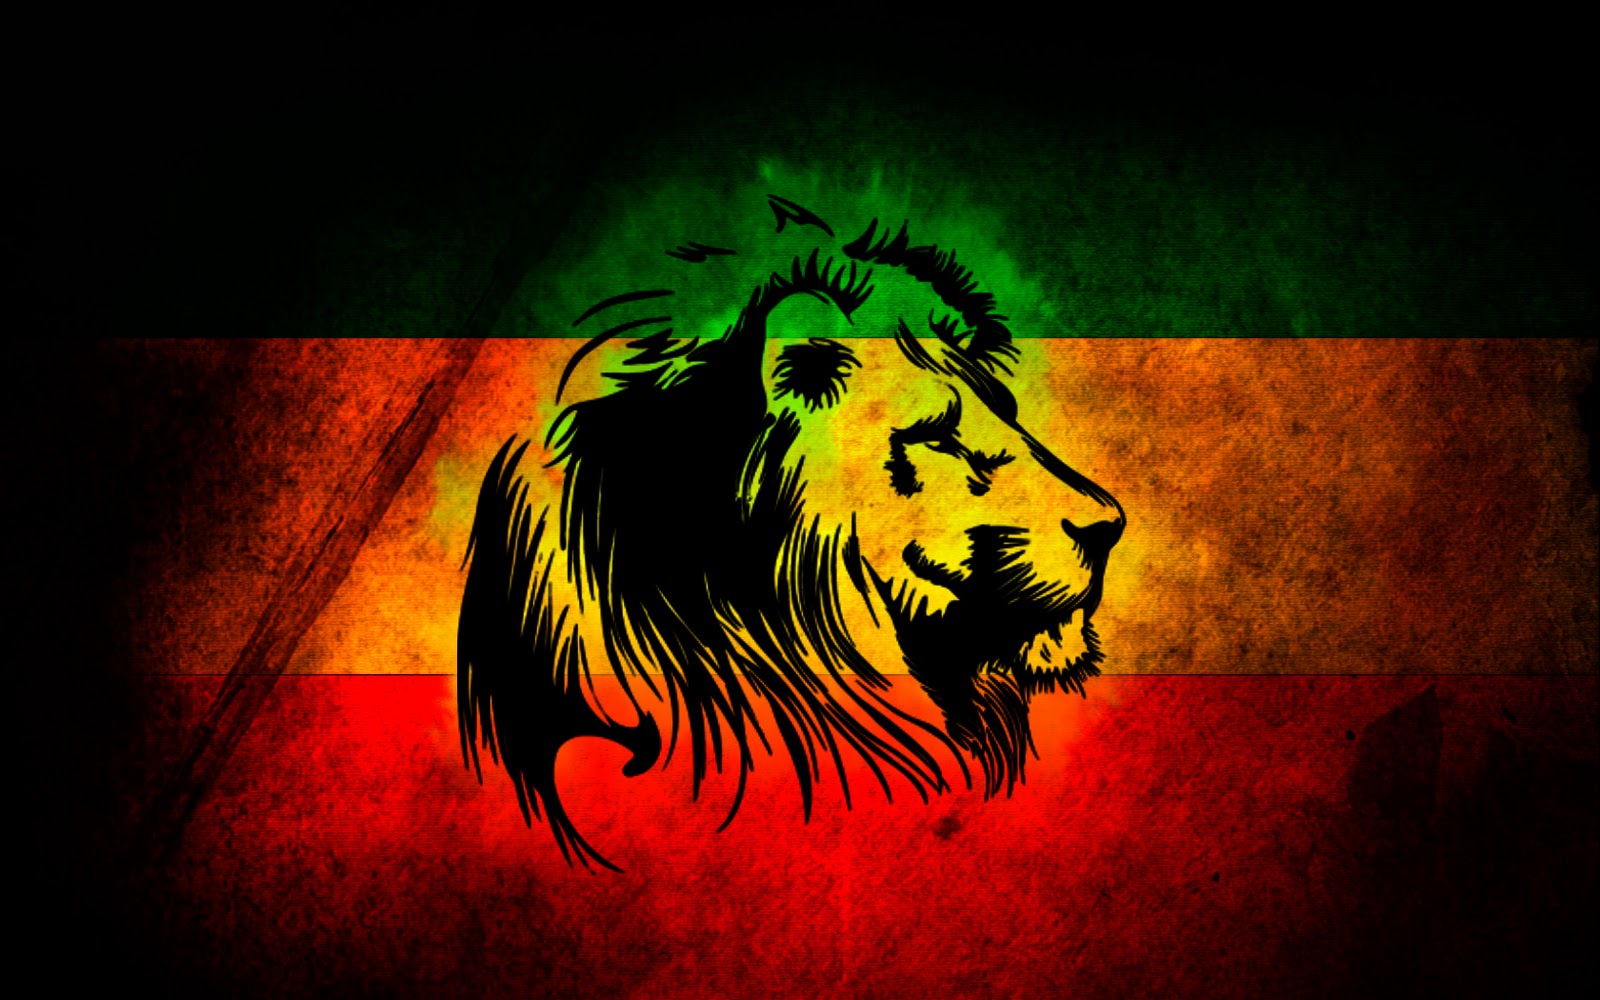 Lion Reggae